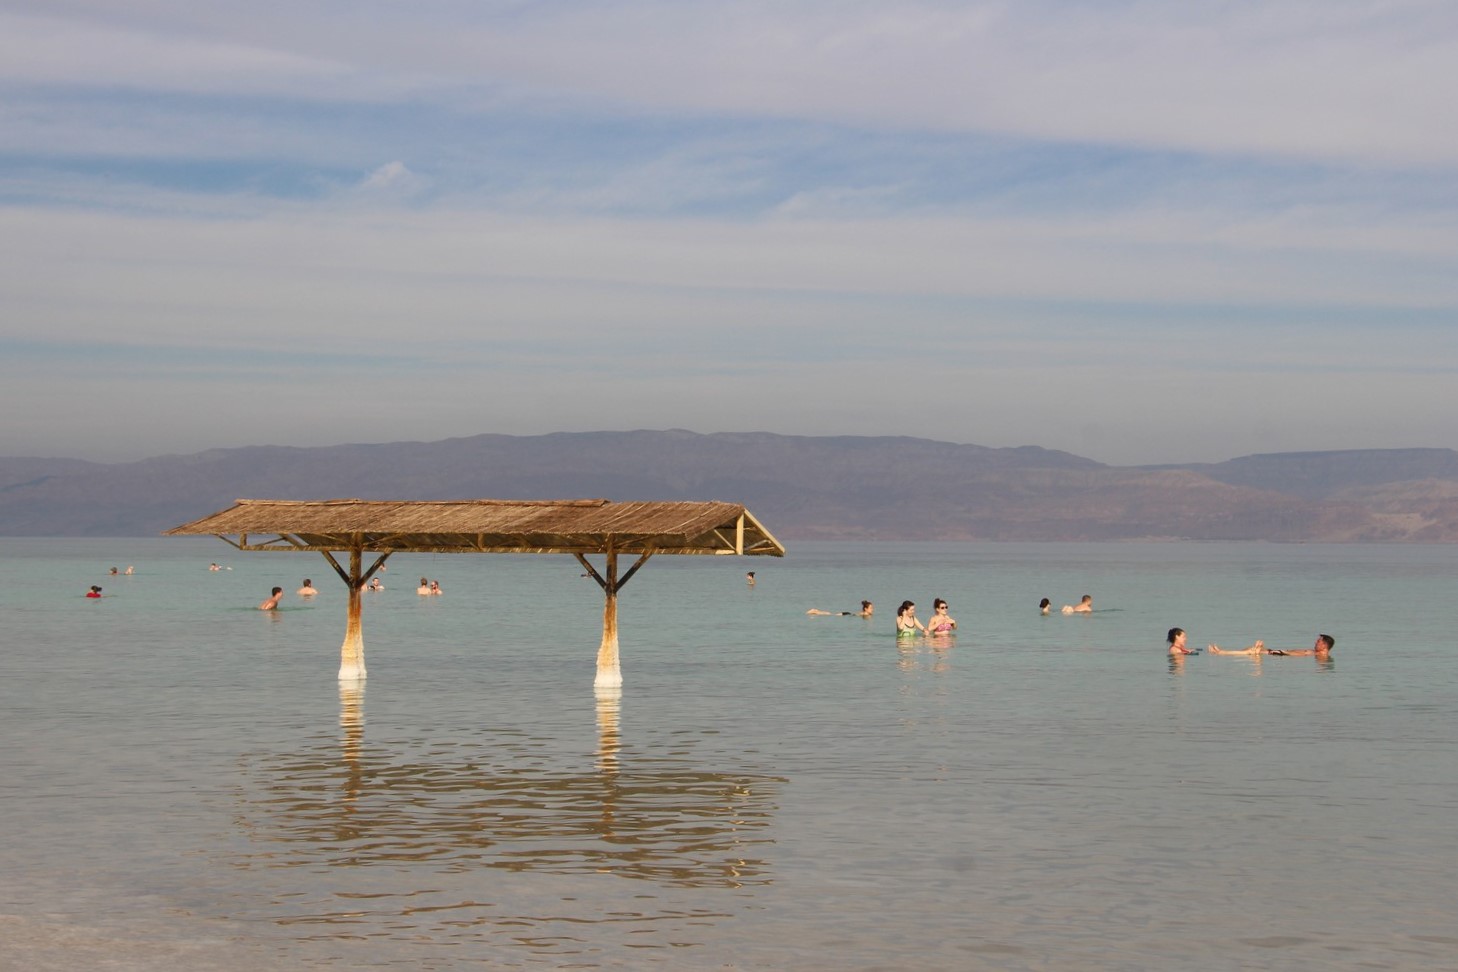 swimming in the Dead Sea